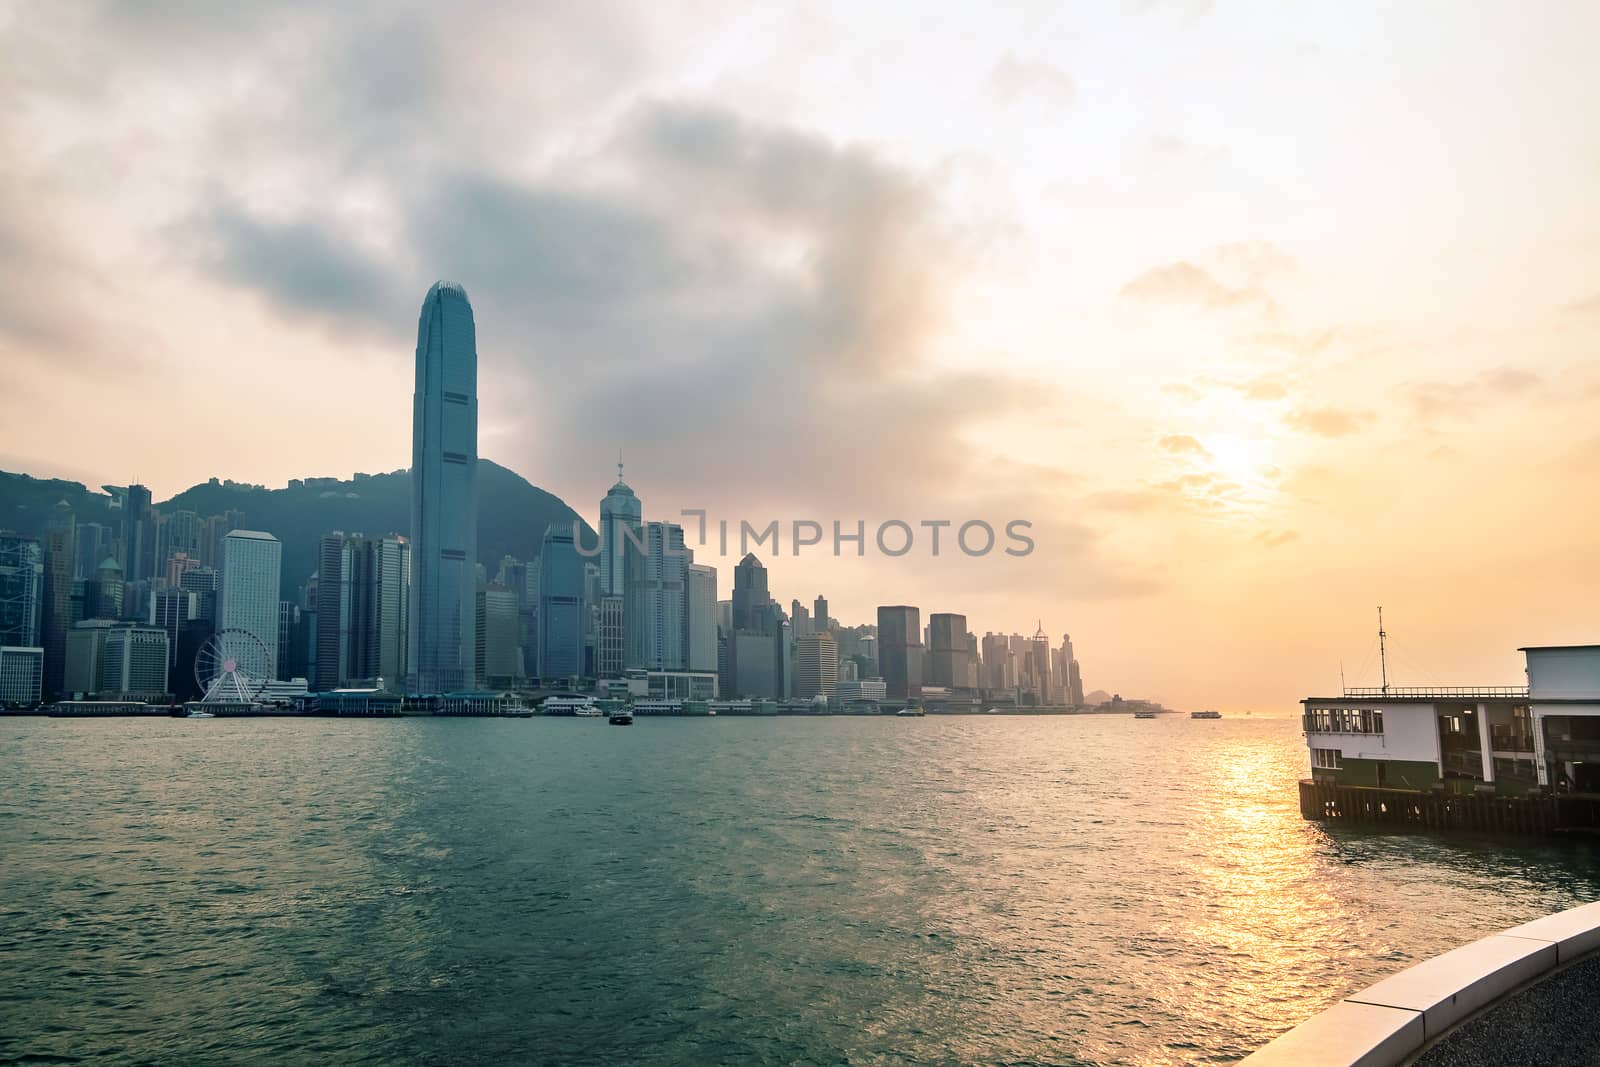 Hong Kong skyline before sunset seen from Kowloon, Hong Kong, China.